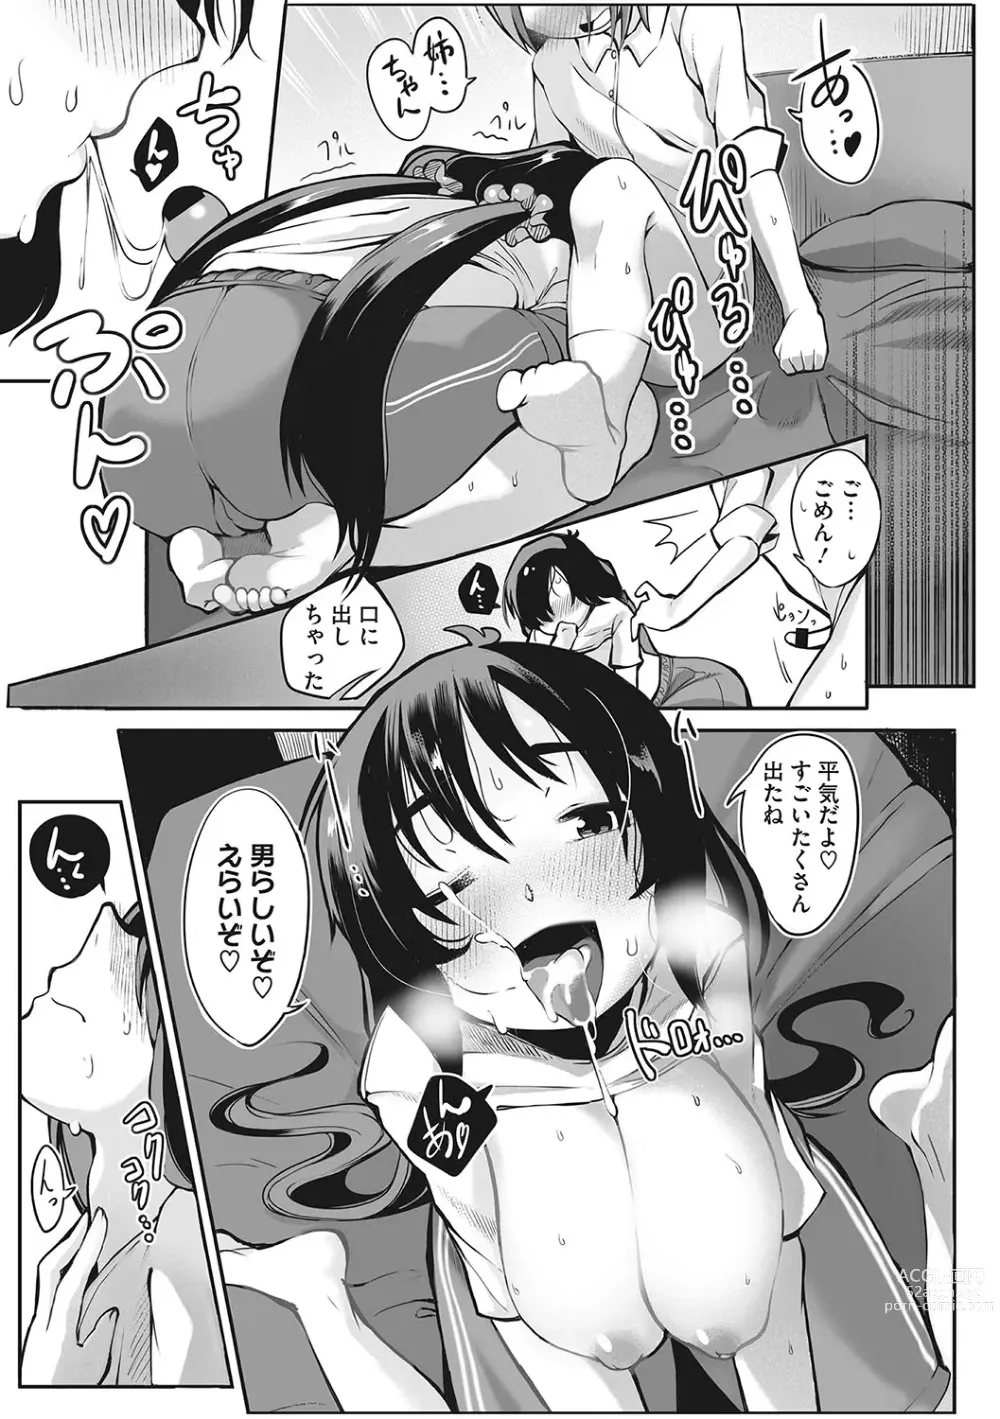 Page 186 of manga Hatsujou Girl ga Arawareta!